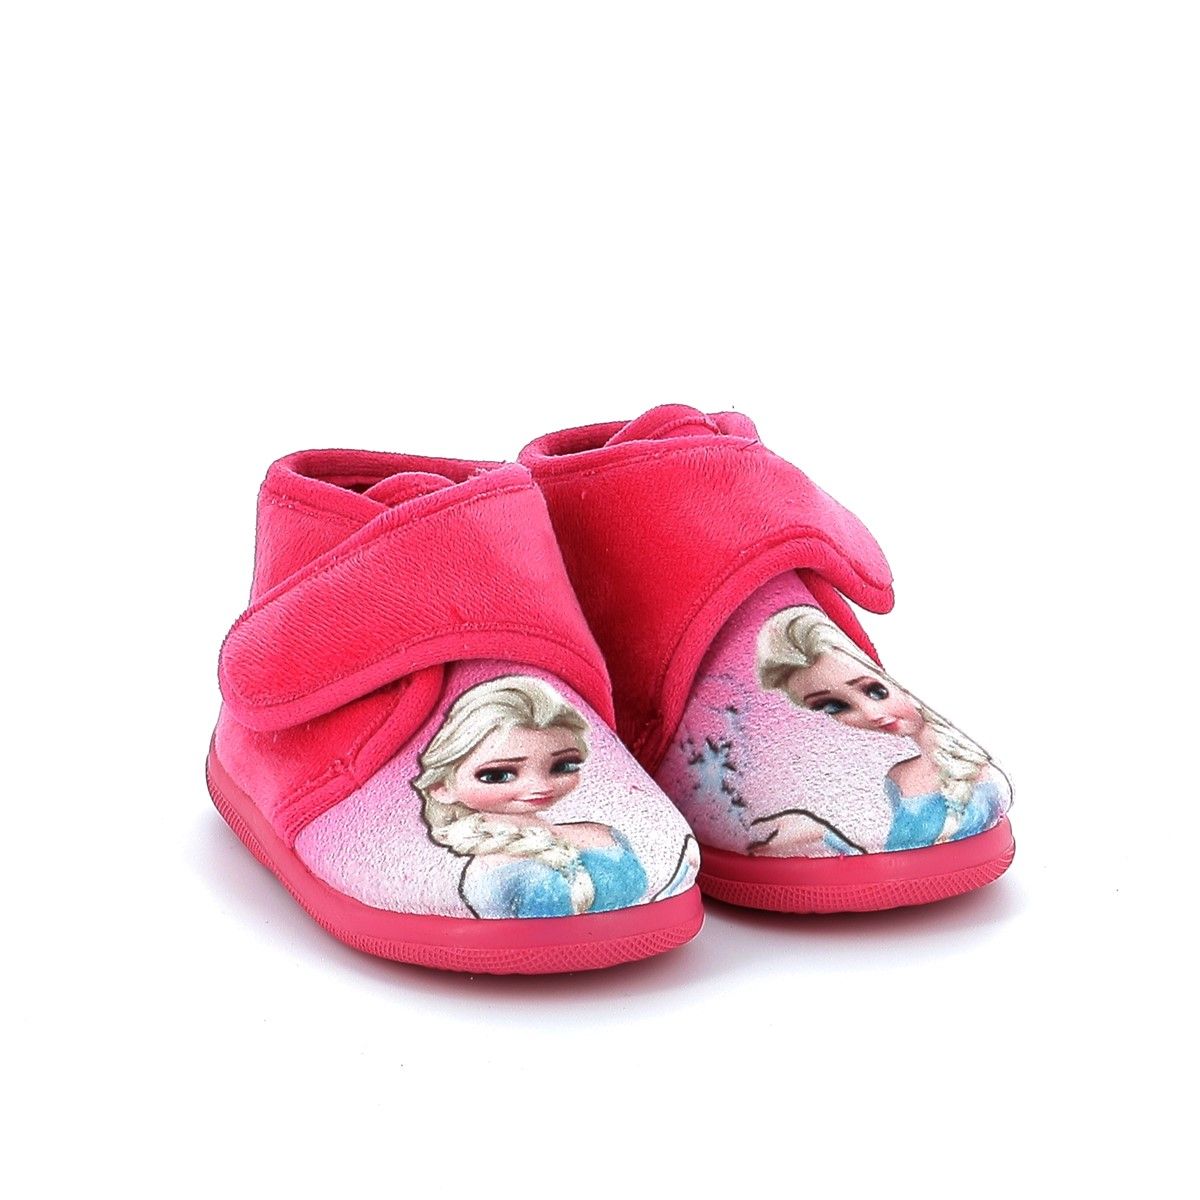 Παιδική Παντόφλα για Κορίτσι Ανατομική Meridian Χρώματος Ροζ 6207152